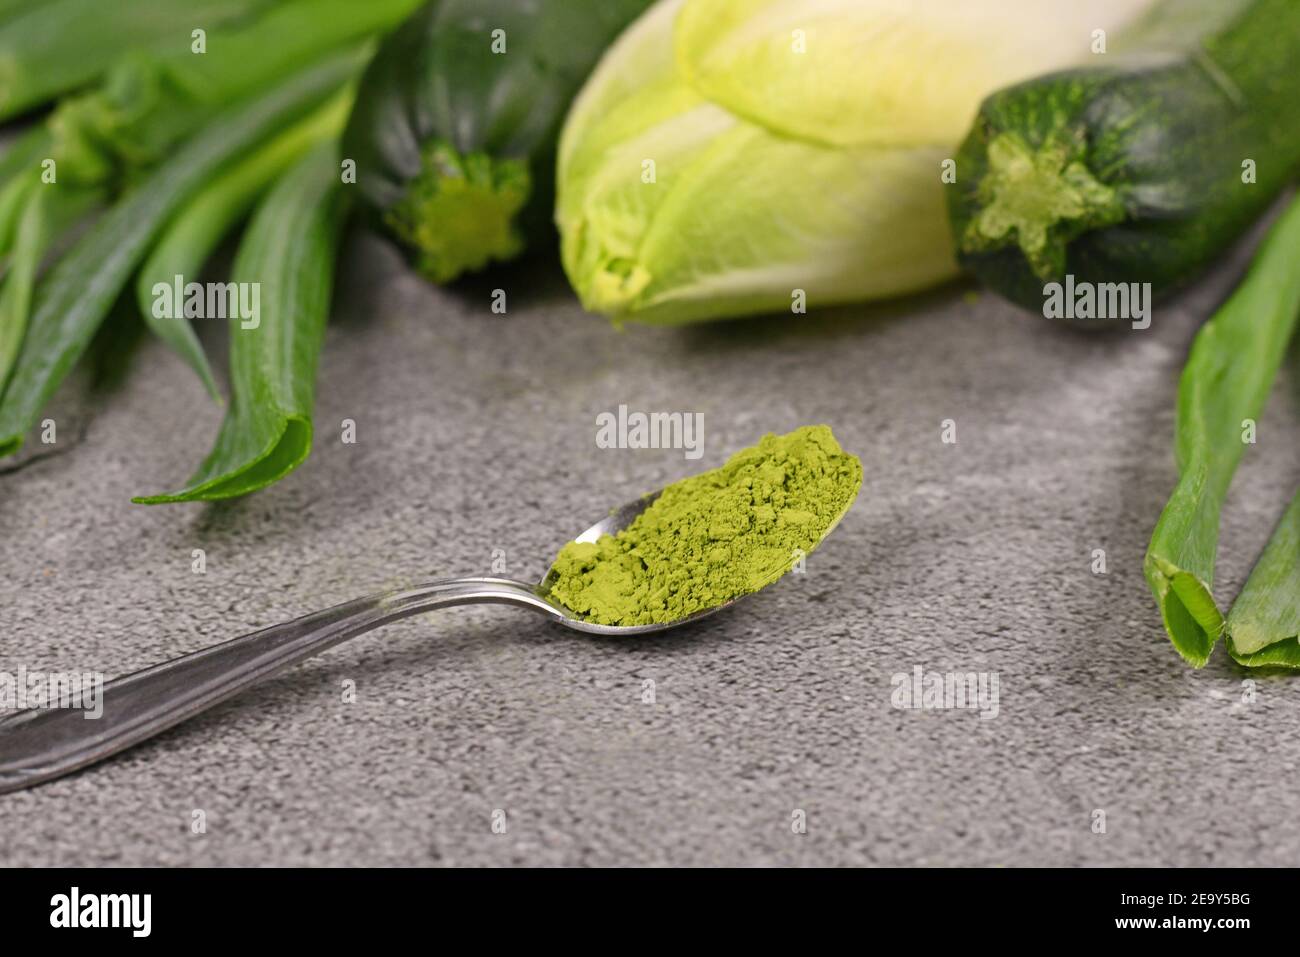 Polvere verde sul cucchiaio davanti alle verdure verdi crude. Concetto per coloranti alimentari naturali o integratori a base di verdure. Foto Stock